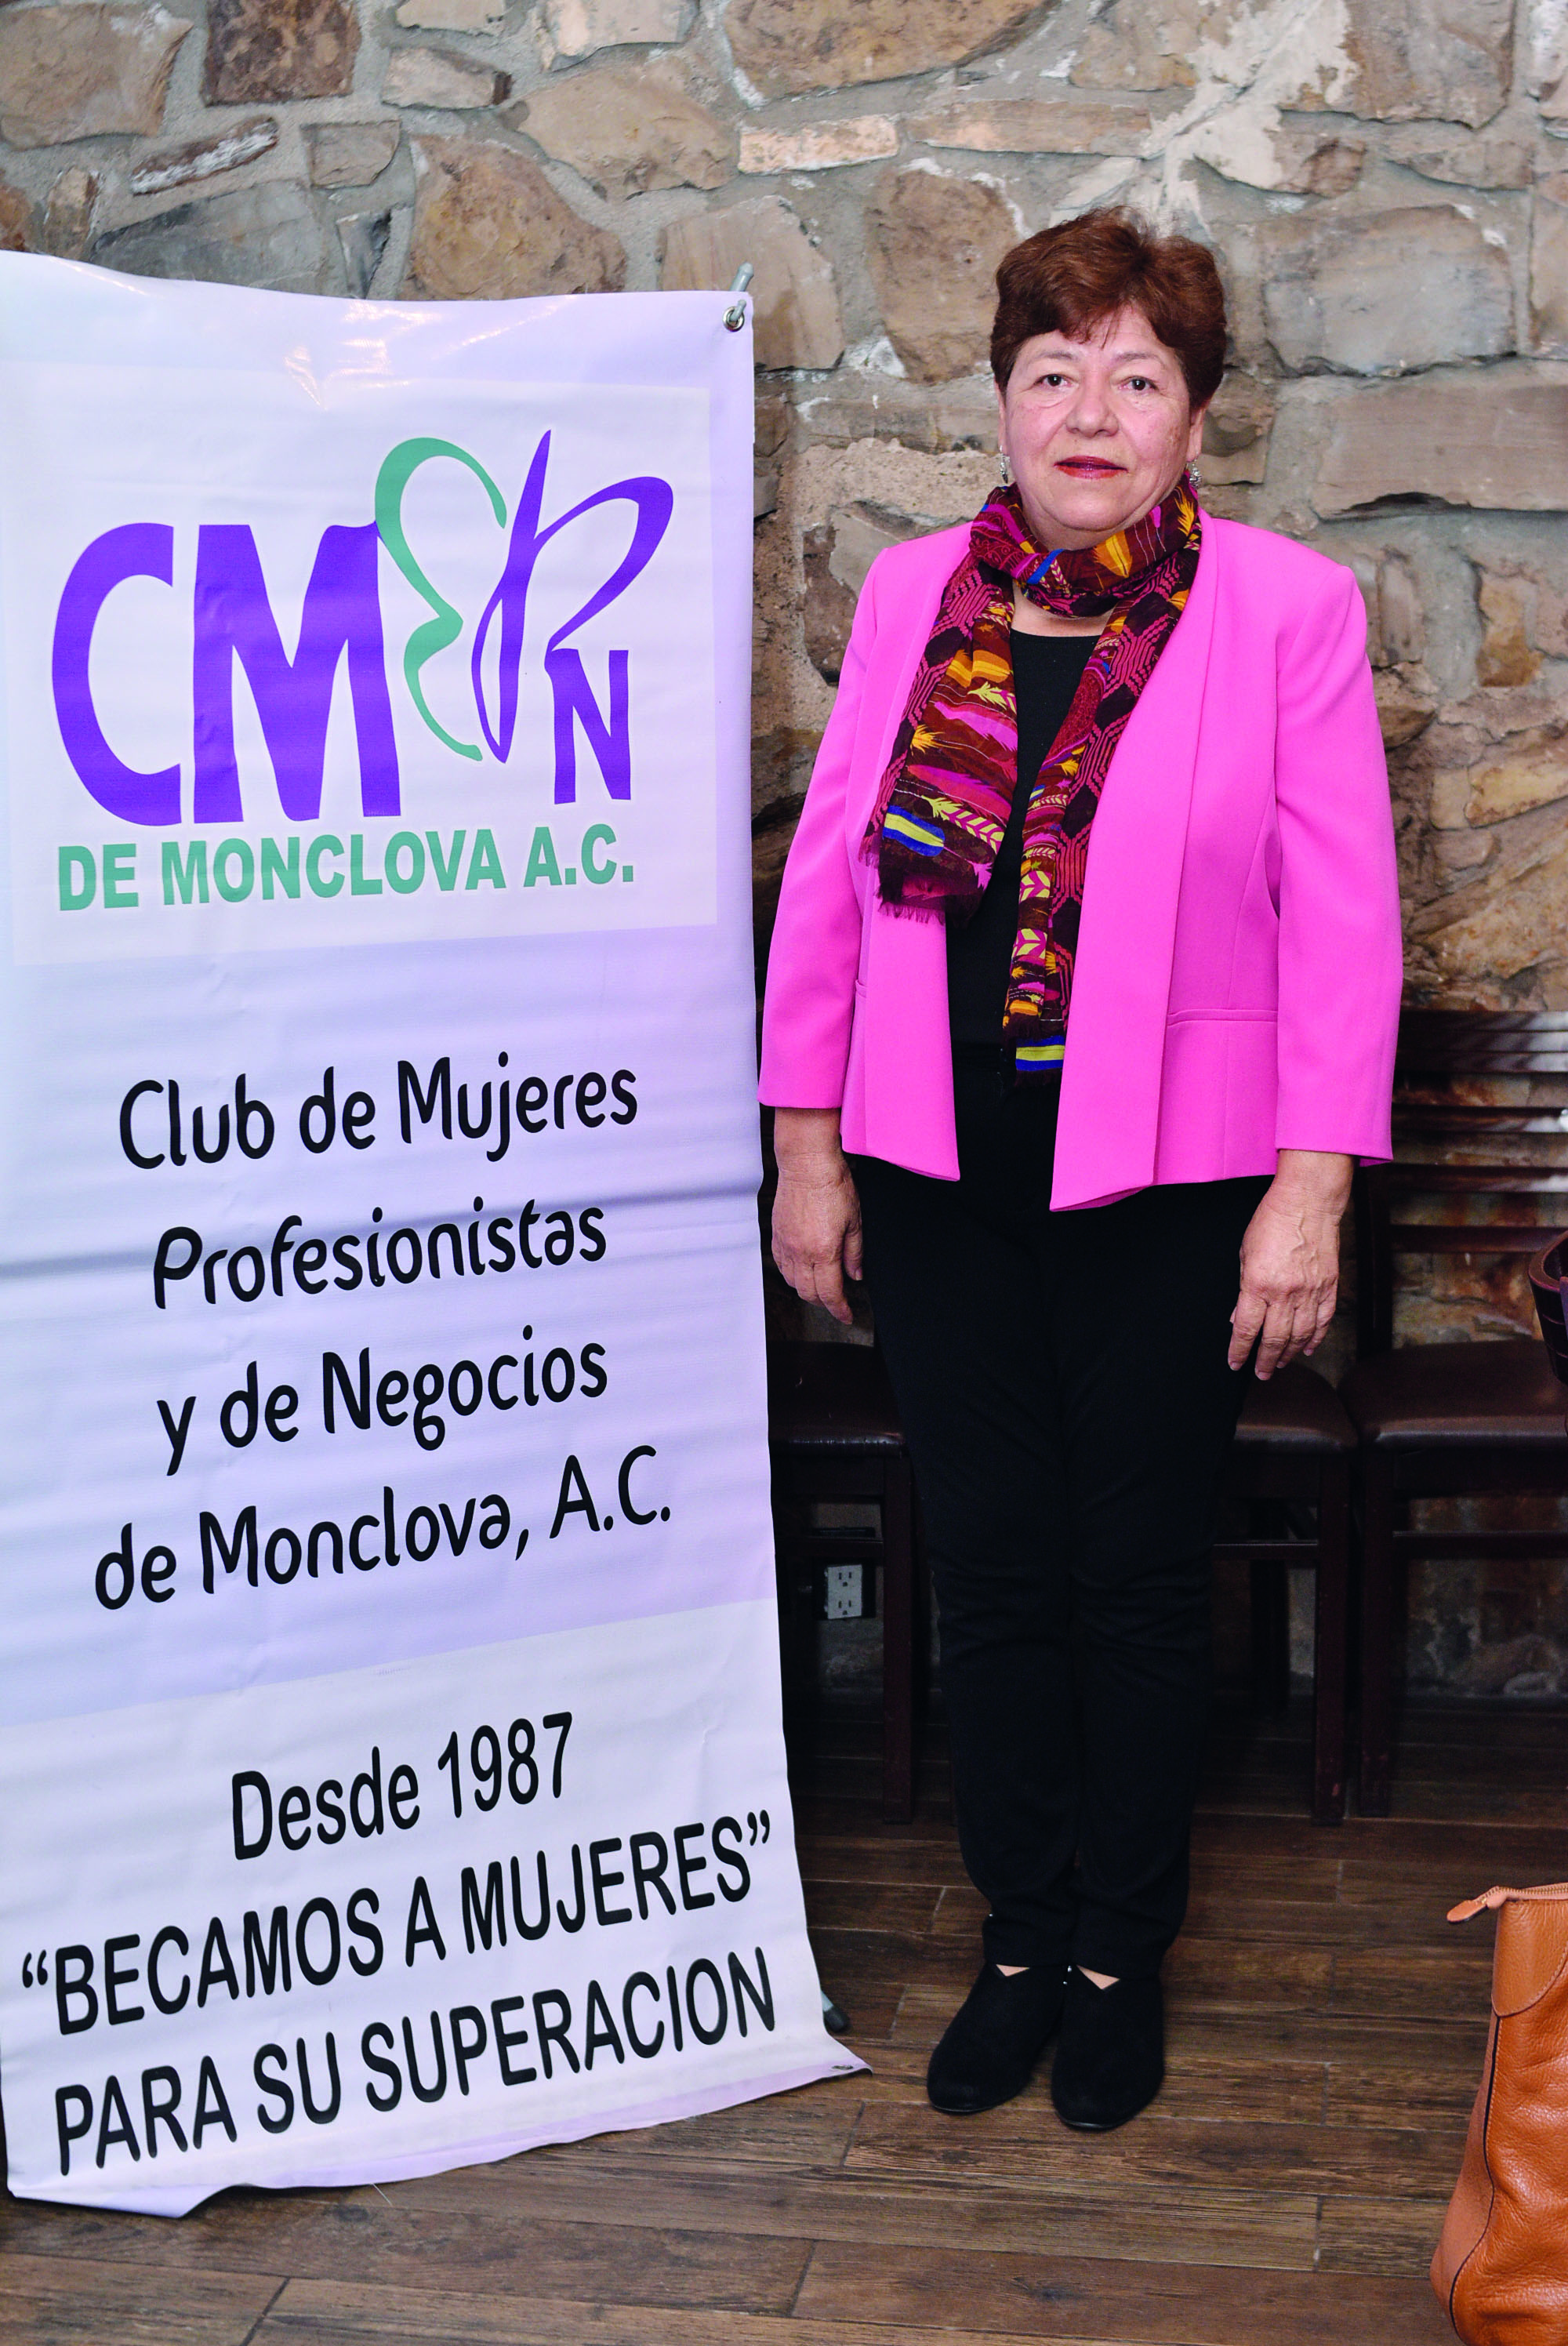 CLUB DE MUJERES PROFESIONISTAS Y DE NEGOCIOS DE MONCLOVA